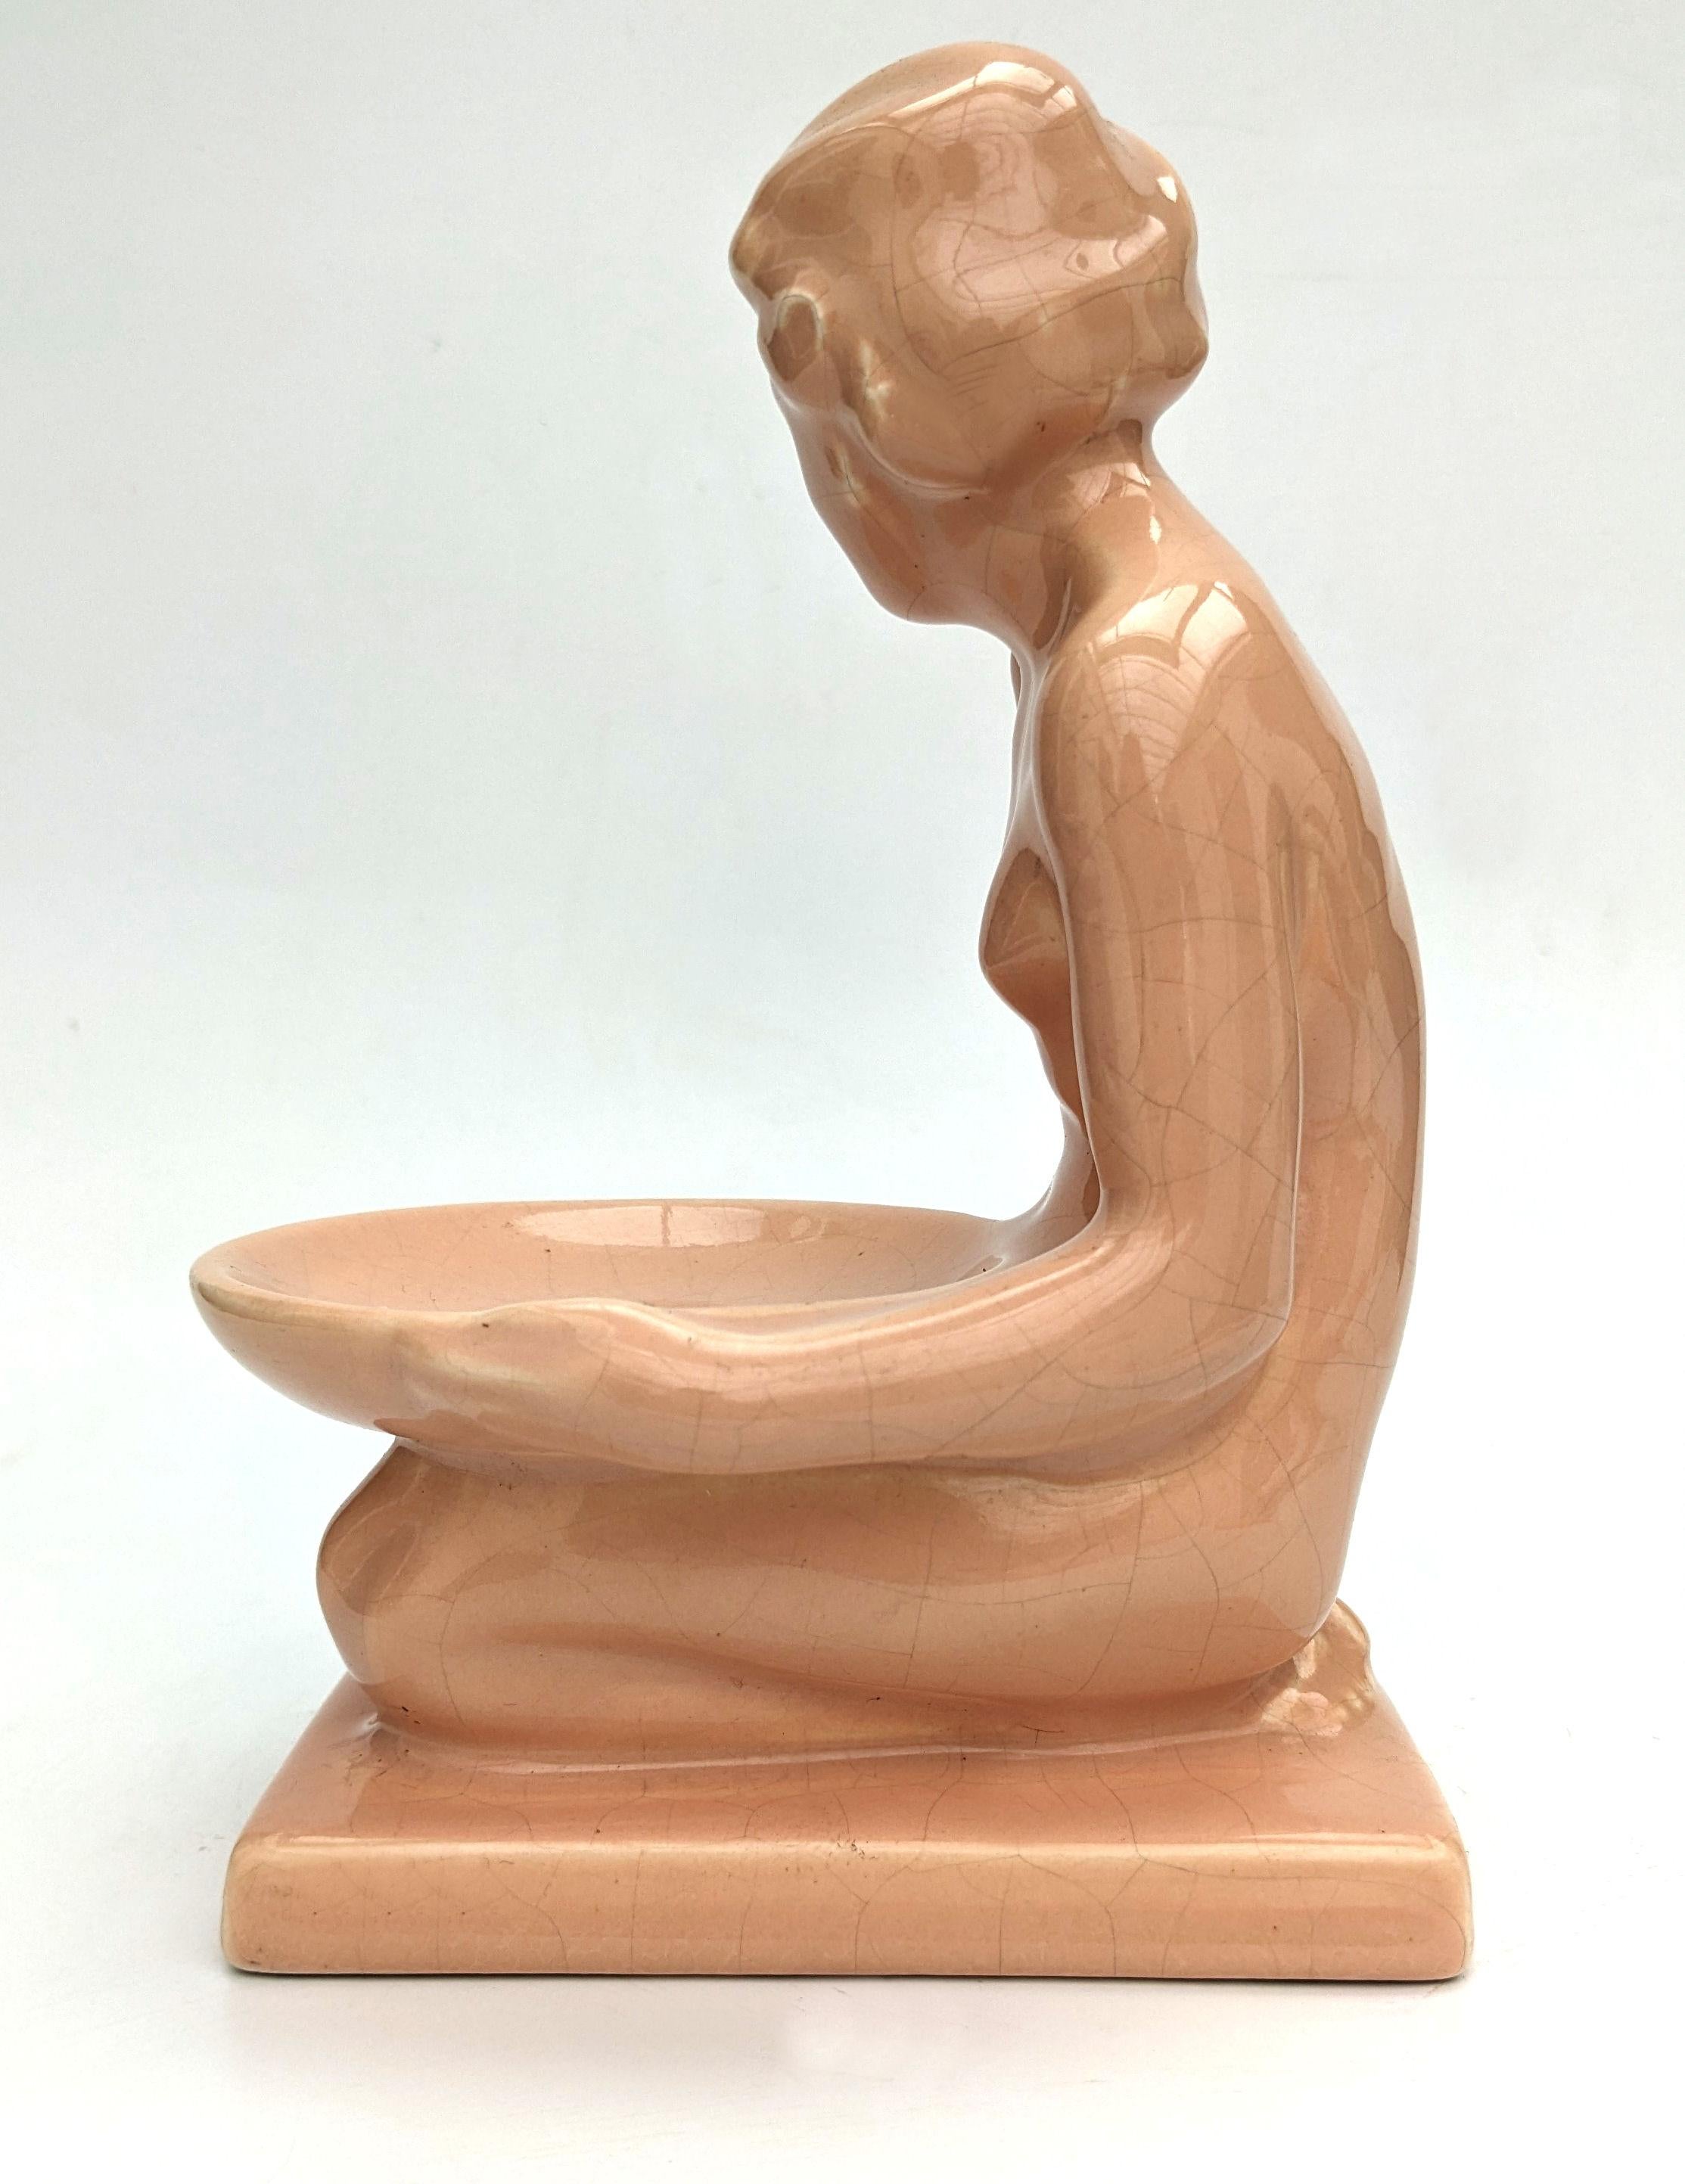 Wir bieten Ihnen diese charmante Art Deco Keramikfigur, die ein nacktes junges Mädchen mit einer flachen Schale auf dem Schoß darstellt. Diese Figur hat eine tolle Größe und kann so ausgestellt werden, wie sie ist, oder man kann sie als Seifenschale